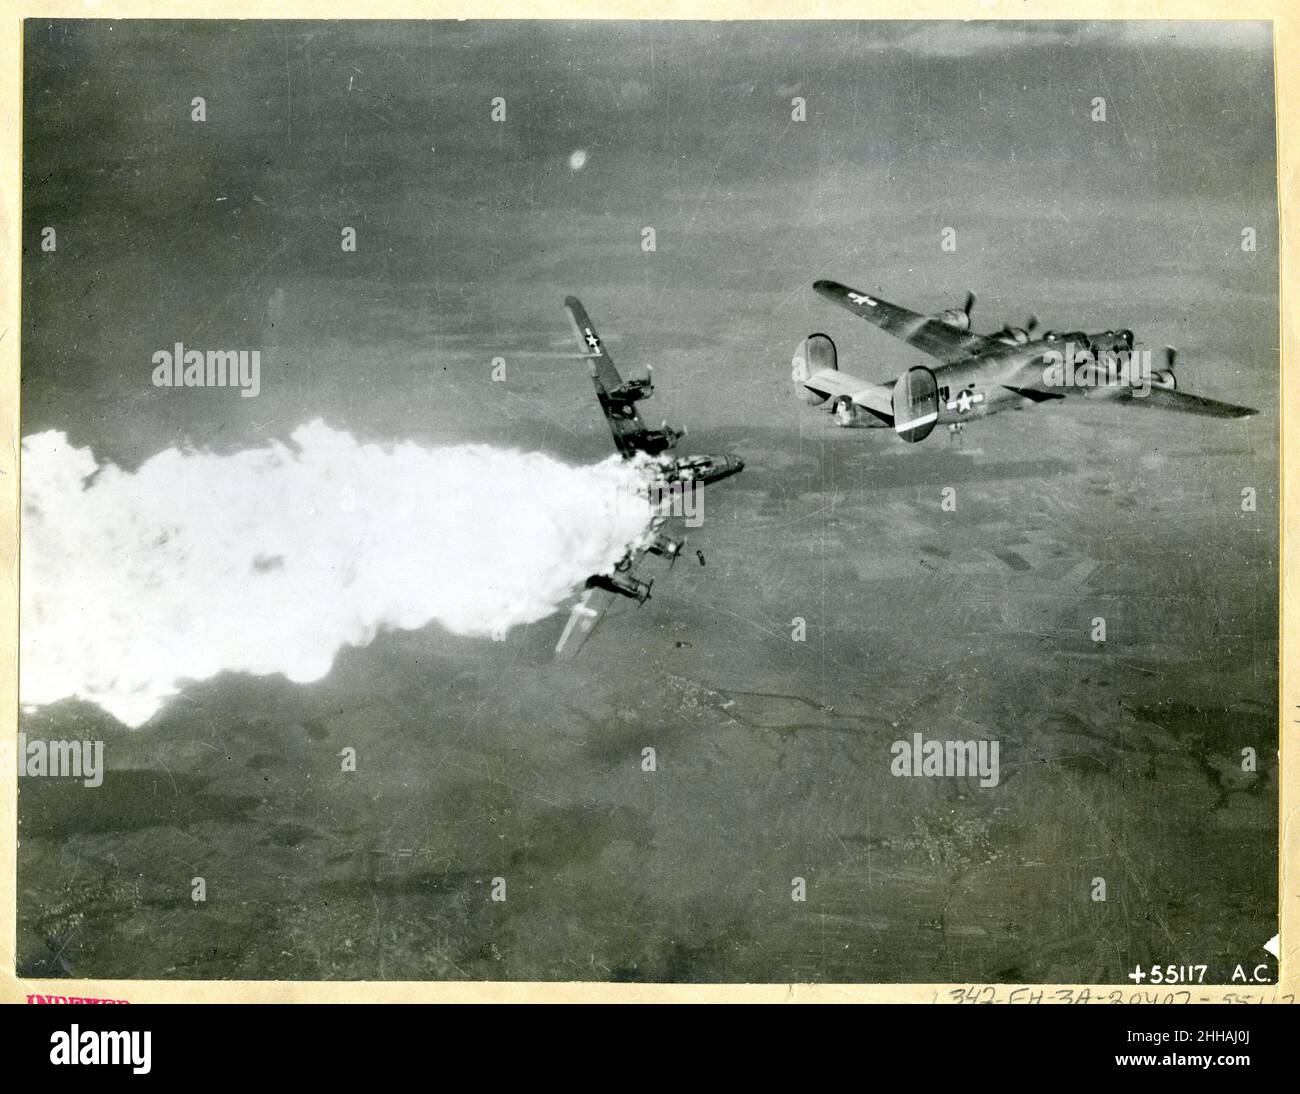 1944 - rottura del liberatore consolidato B-24. Foto dell'aeronautica statunitense. Foto Stock